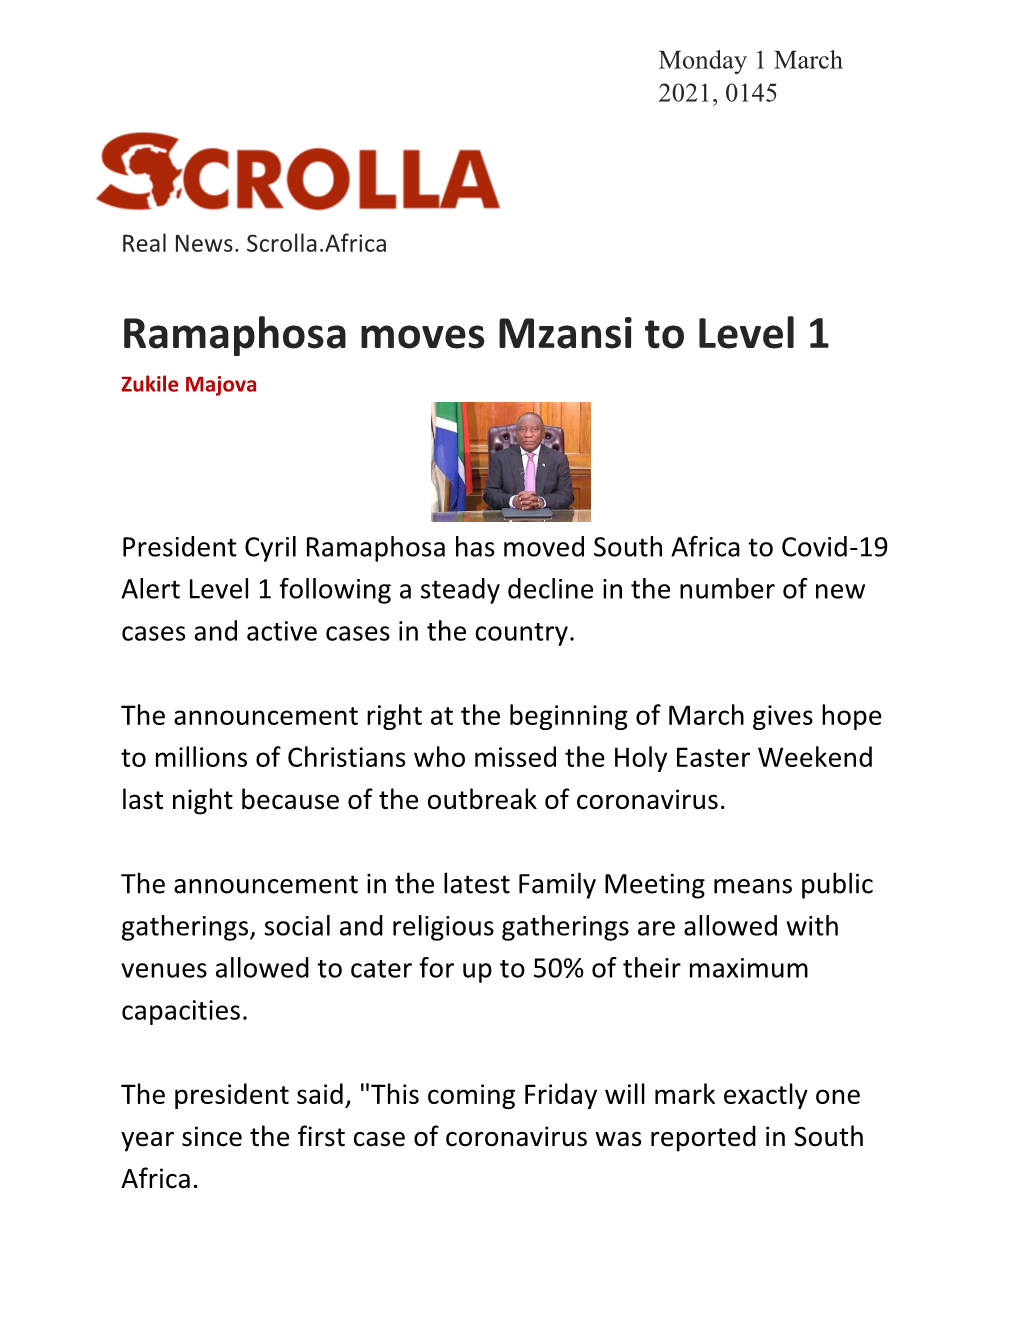 Ramaphosa Moves Mzansi to Level 1 Zukile Majova